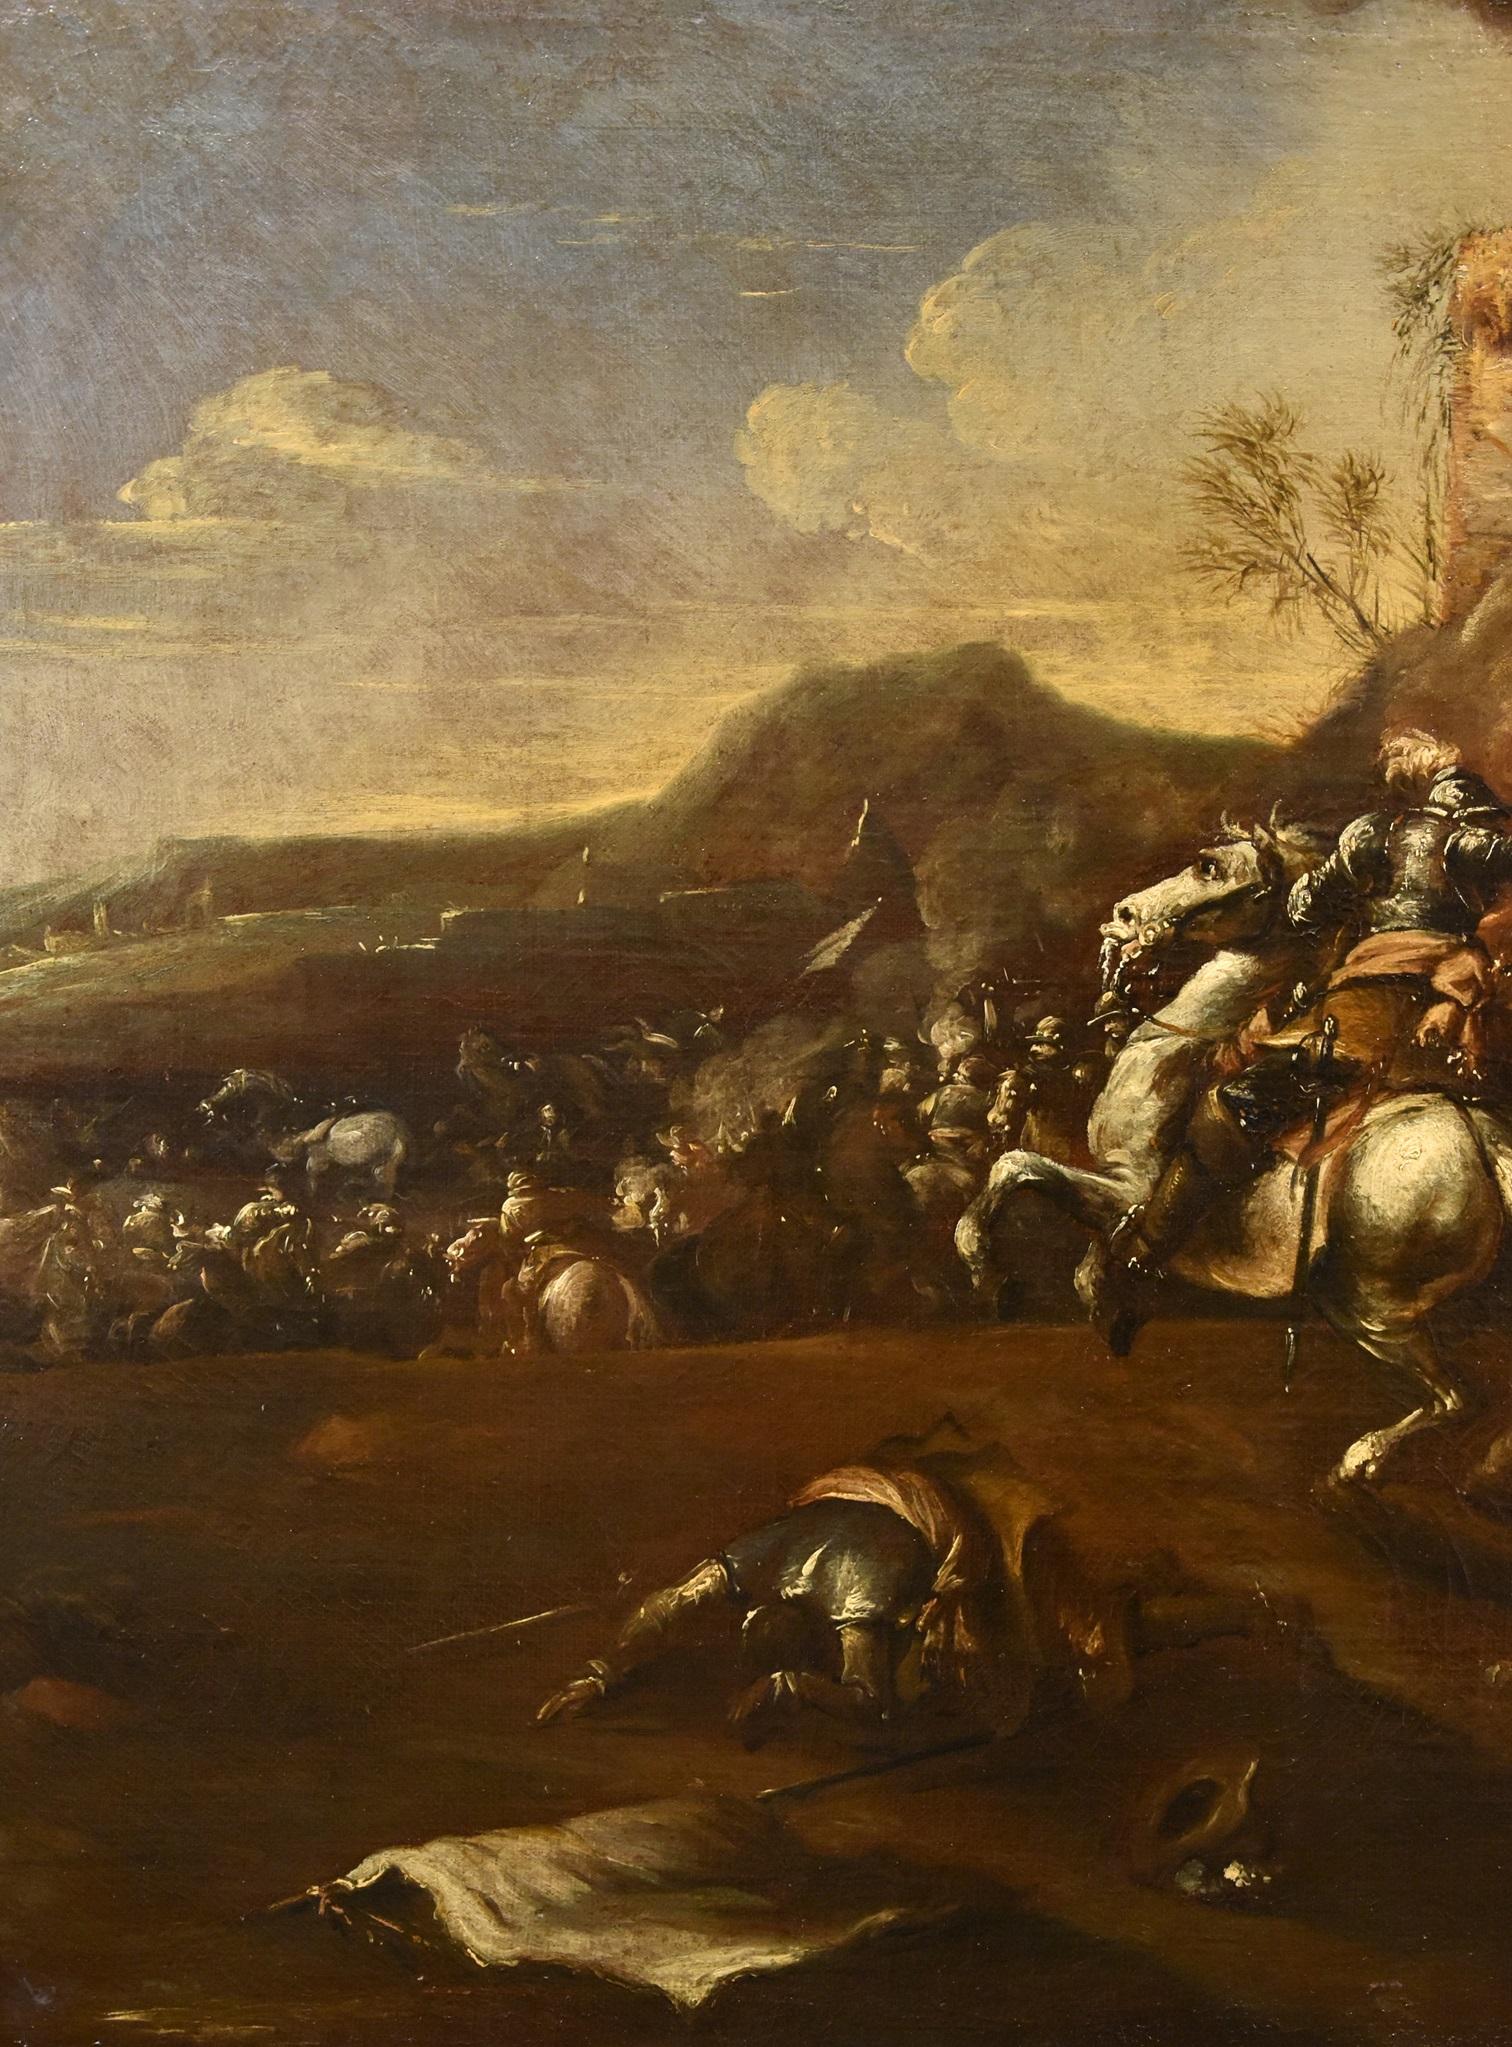 Francesco Graziani, bekannt als Ciccio Napoletano
(tätig in Neapel und Rom in der zweiten Hälfte des 17. Jahrhunderts)

Schlacht mit Zusammenstoß von Reitern

Öl auf Leinwand
95 x 130 cm
In zeitgenössischem Rahmen cm. 114 x 148

Gutachten E.